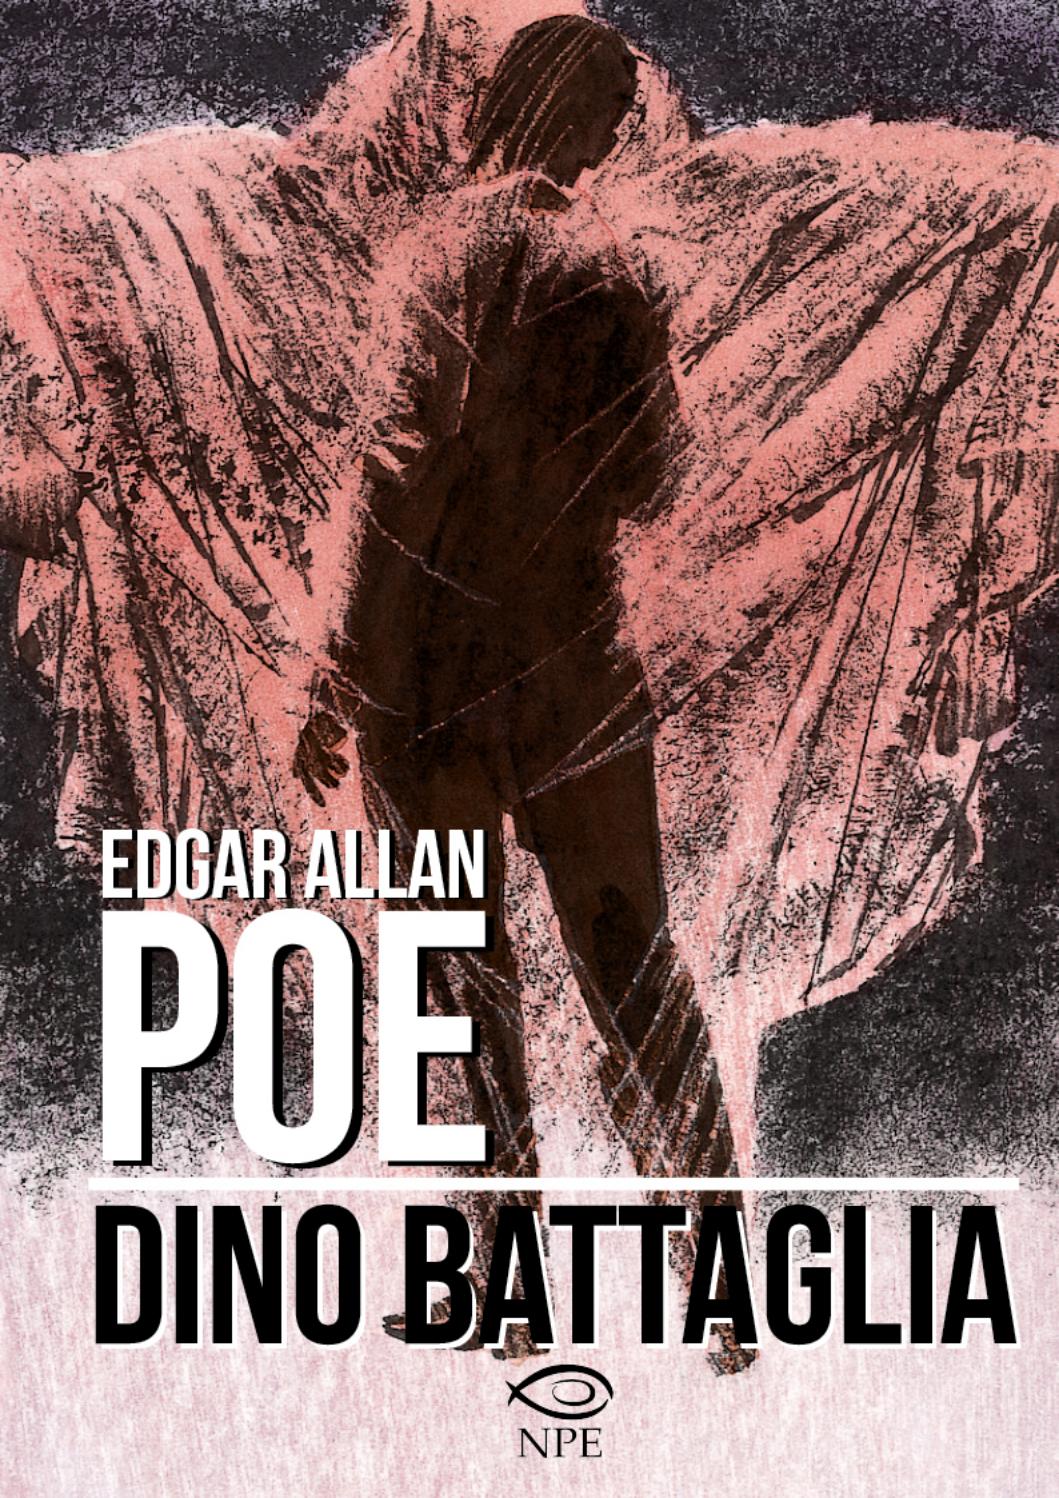 Edgar Allan Poe di Dino Battaglia